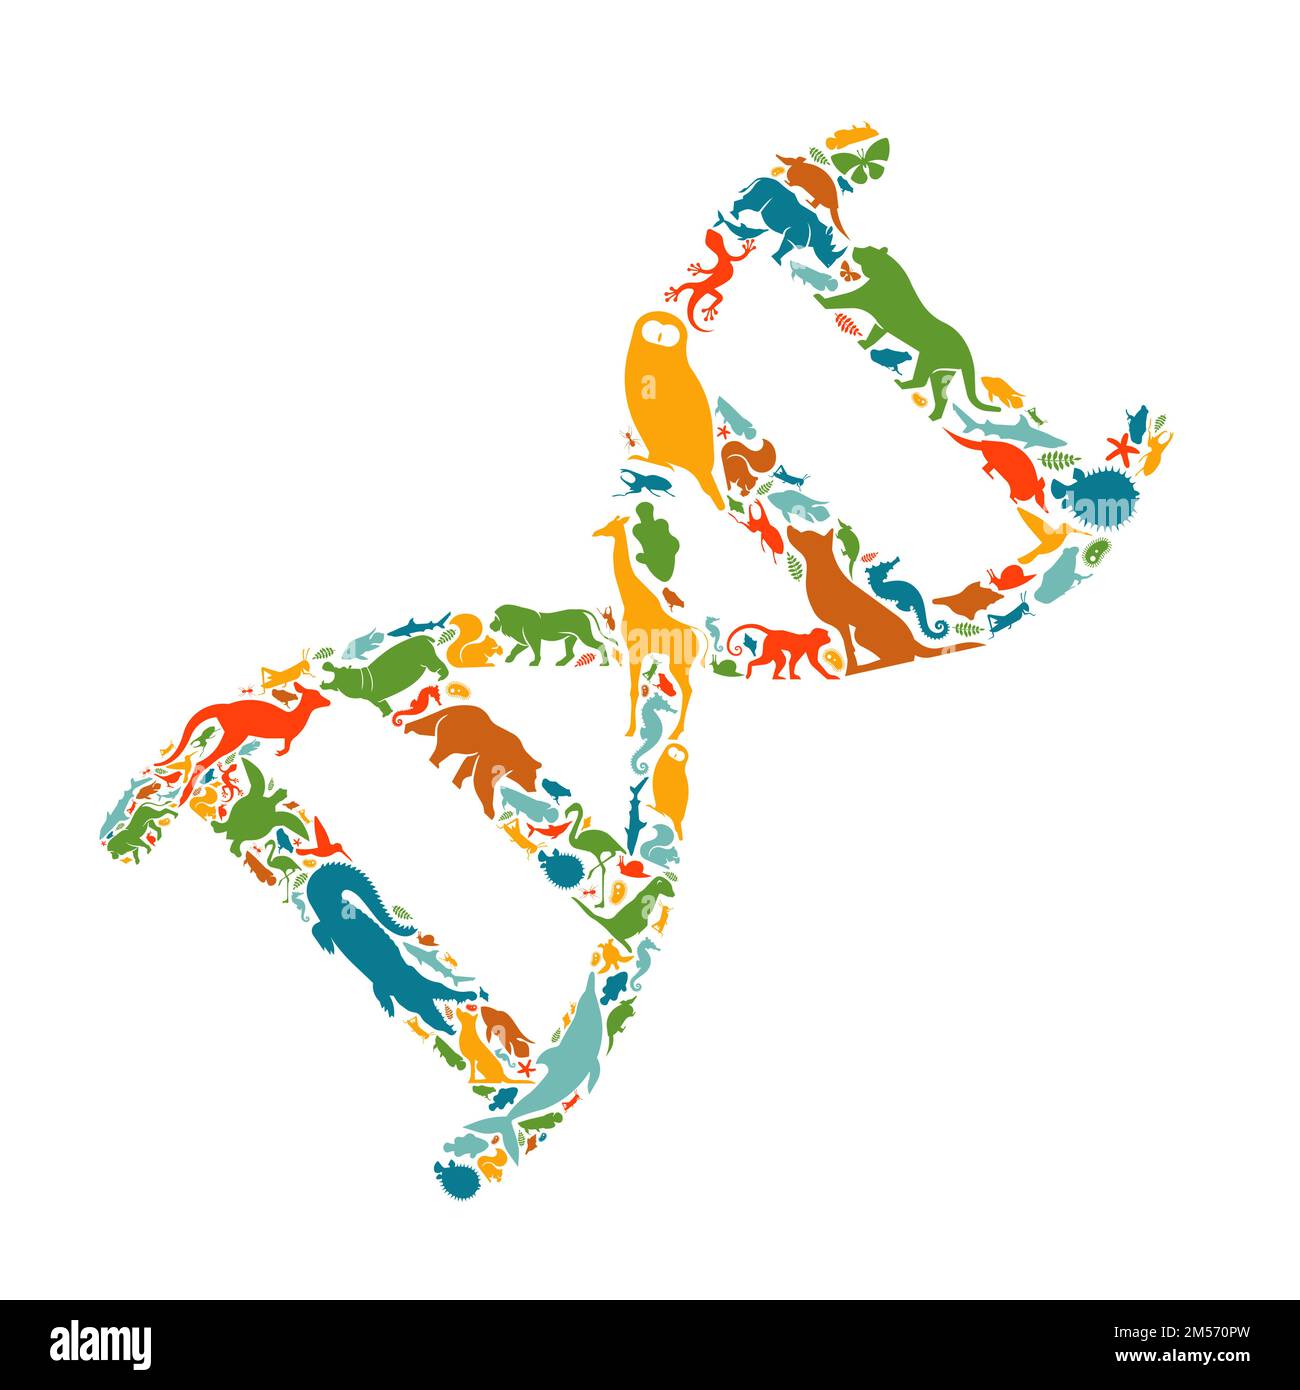 Diverses formes animales qui forment des brins d'ADN sur fond blanc isolé. Illustration de la silhouette d'animaux plats. Recherche scientifique, biodiversité, Or Illustration de Vecteur